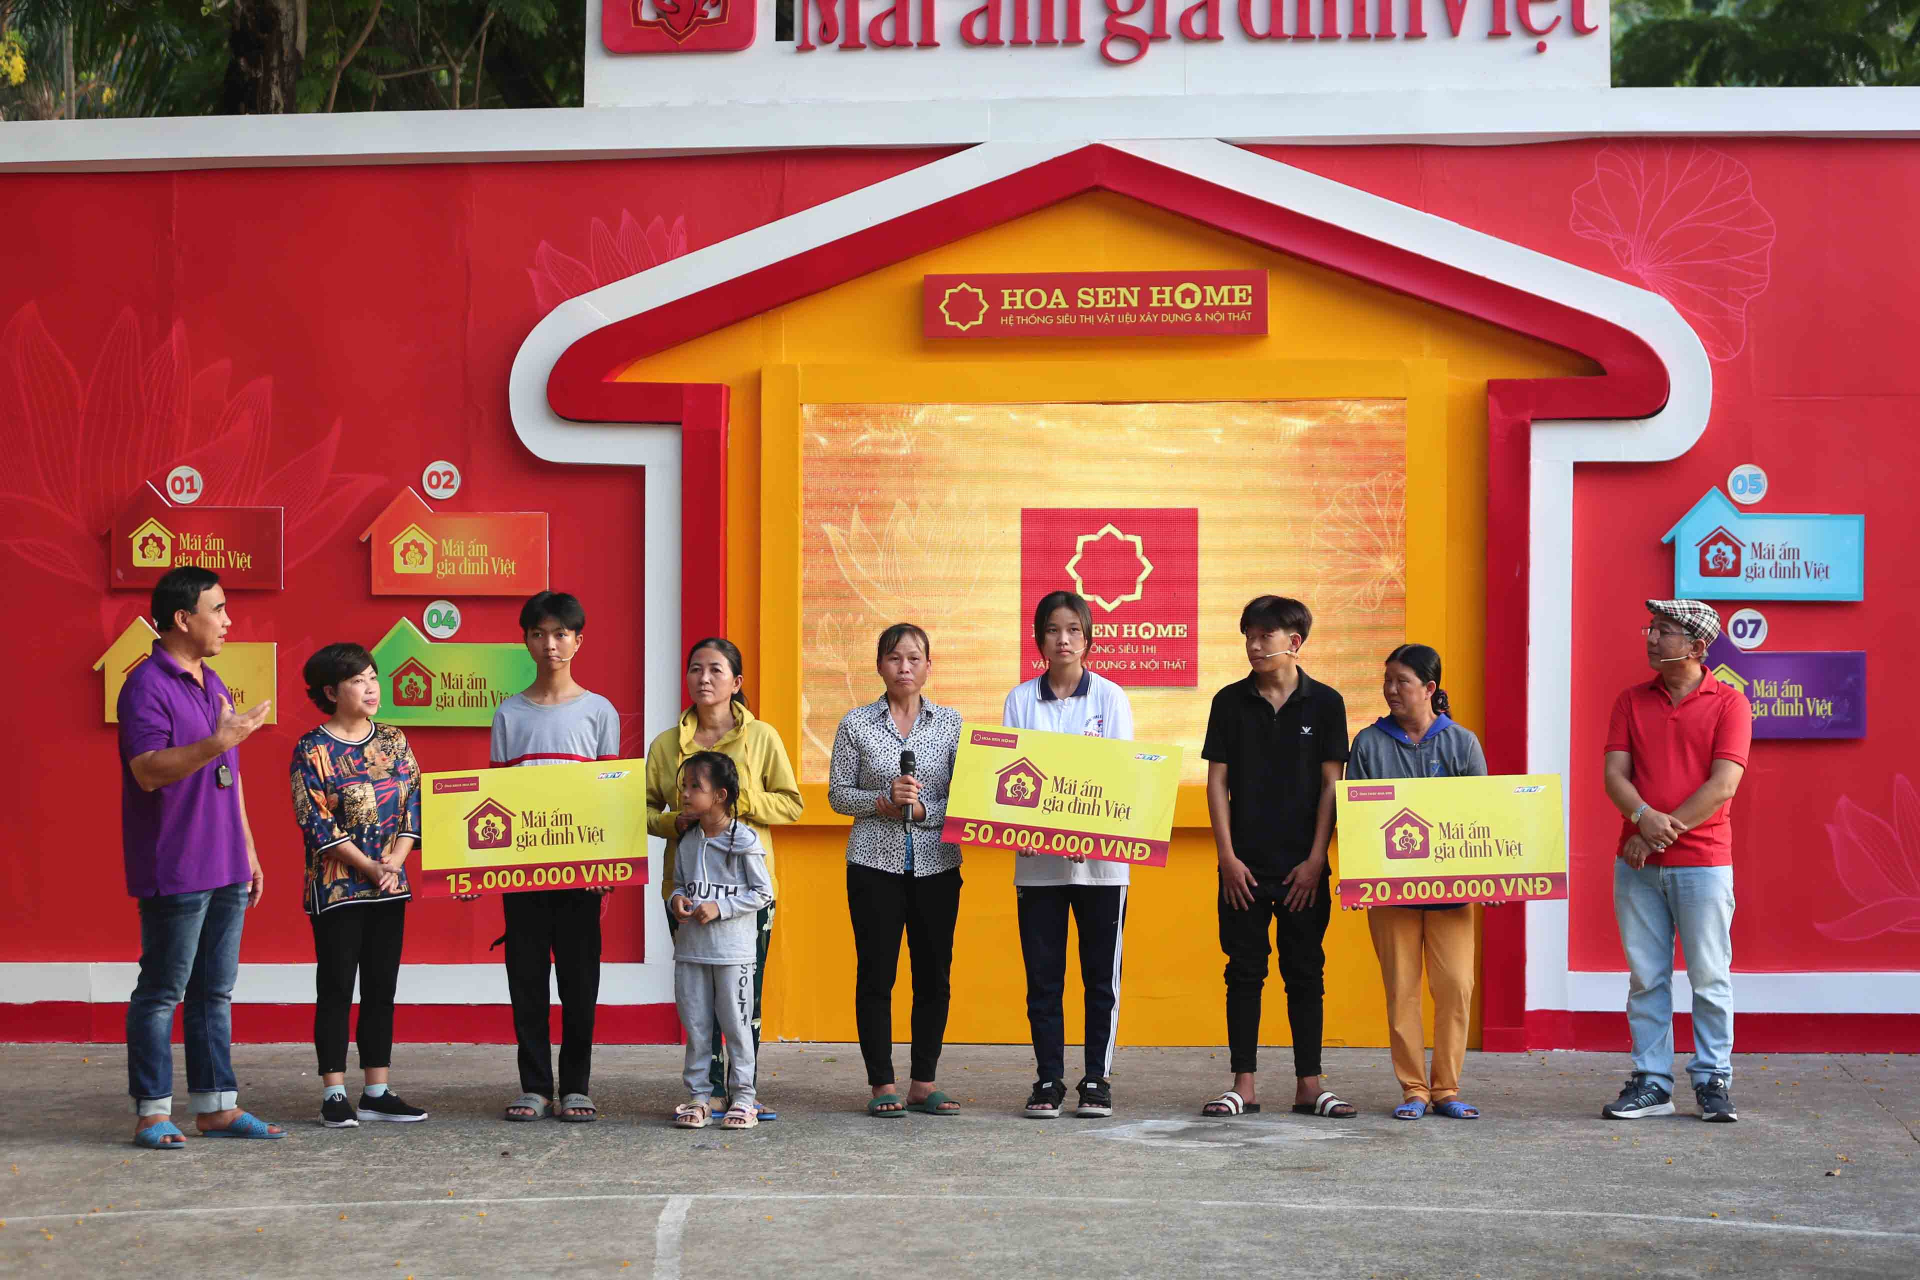 Trước hoàn cảnh đặc biệt của các bé, nghệ sĩ Phi Phụng và Trung Dân đã tặng hết tiền cát-xê khi tham gia chương trình cho gia đình bé Thành Lợi và Minh Kiệt.